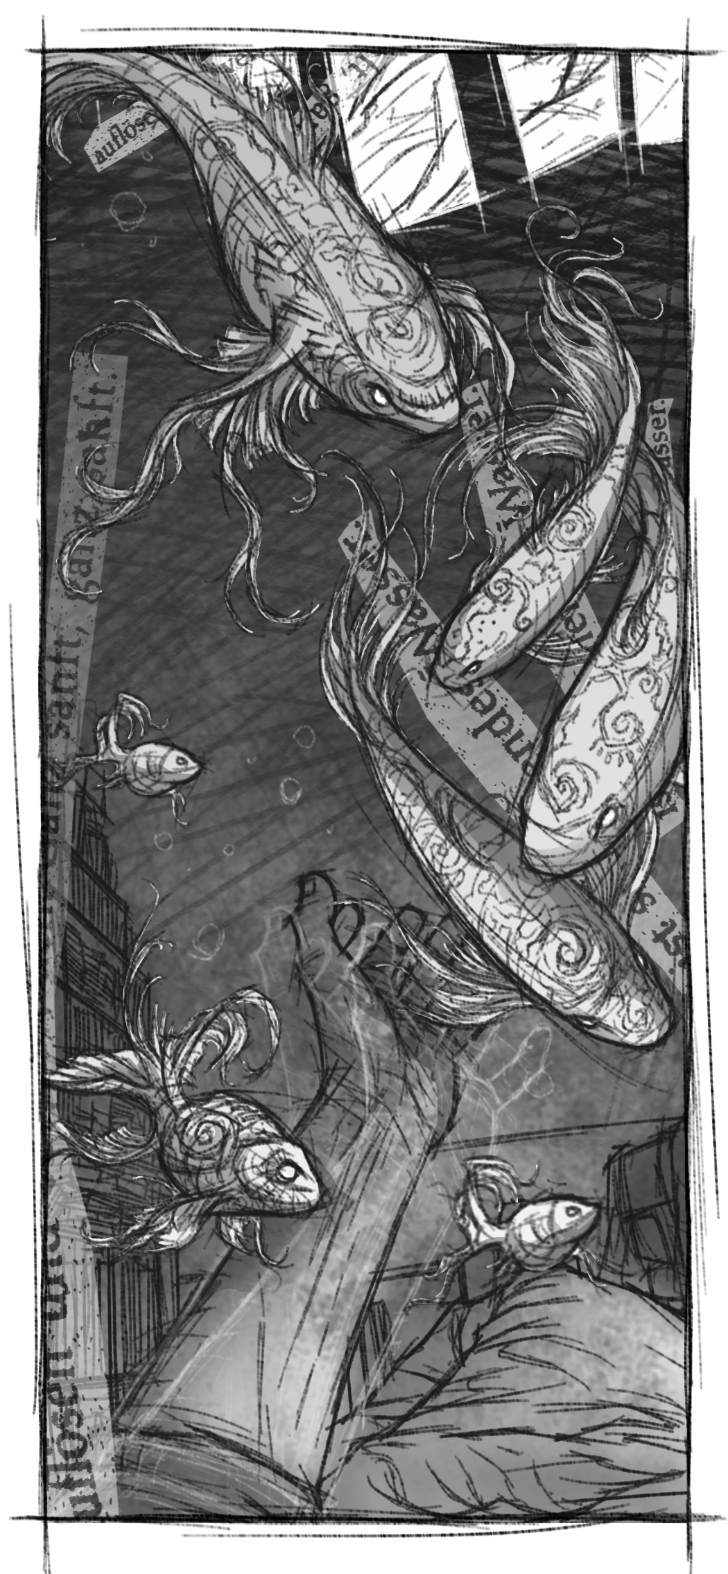 Ein Detailbild einer skizzenhaften Illustration aus der Egoperspektive, die eine liegende Person zeigt die von Fischen träumt